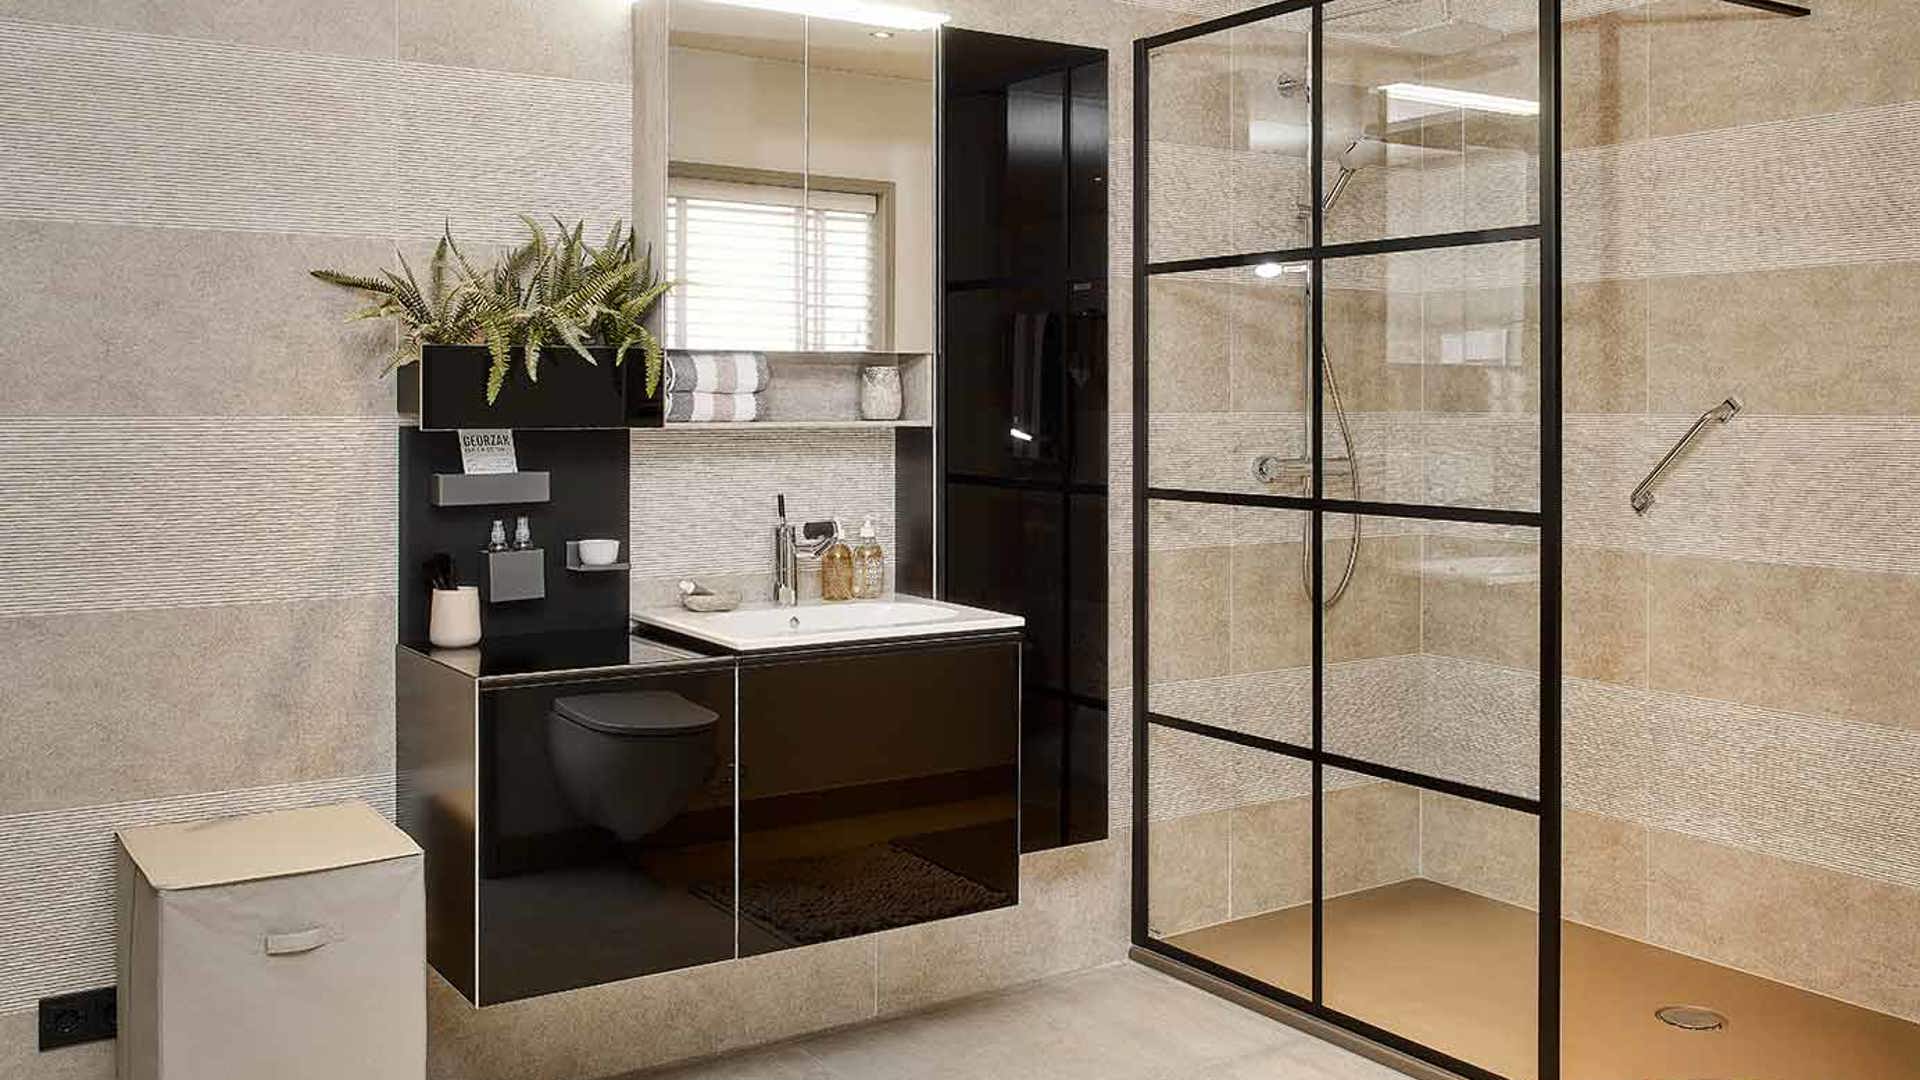 Moderne badkamer met zwarte staalramen en zwart badkamermeubel